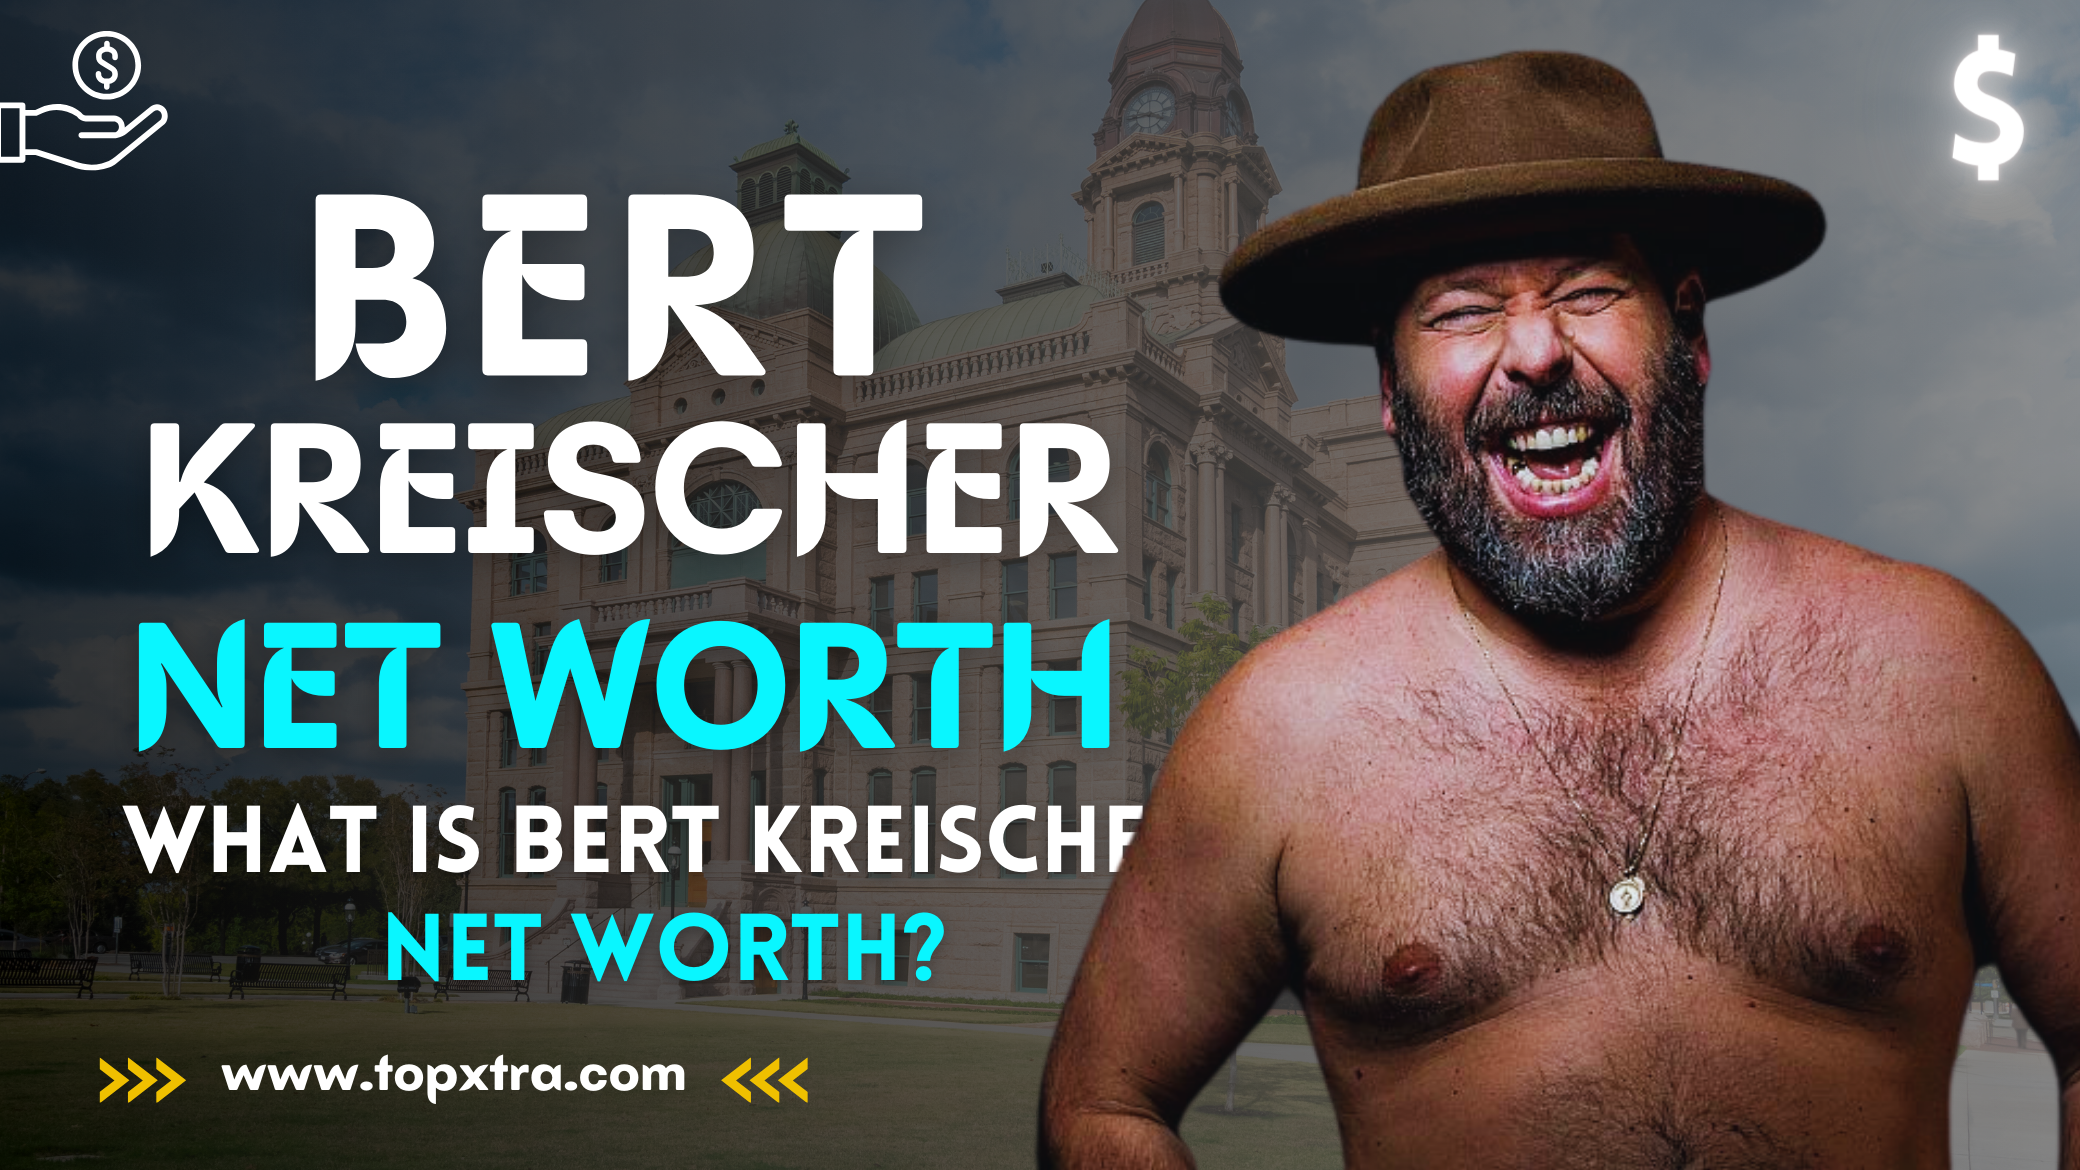 Bert Kreischer Net Worth | What Is Bert Kreischer's Net Worth?